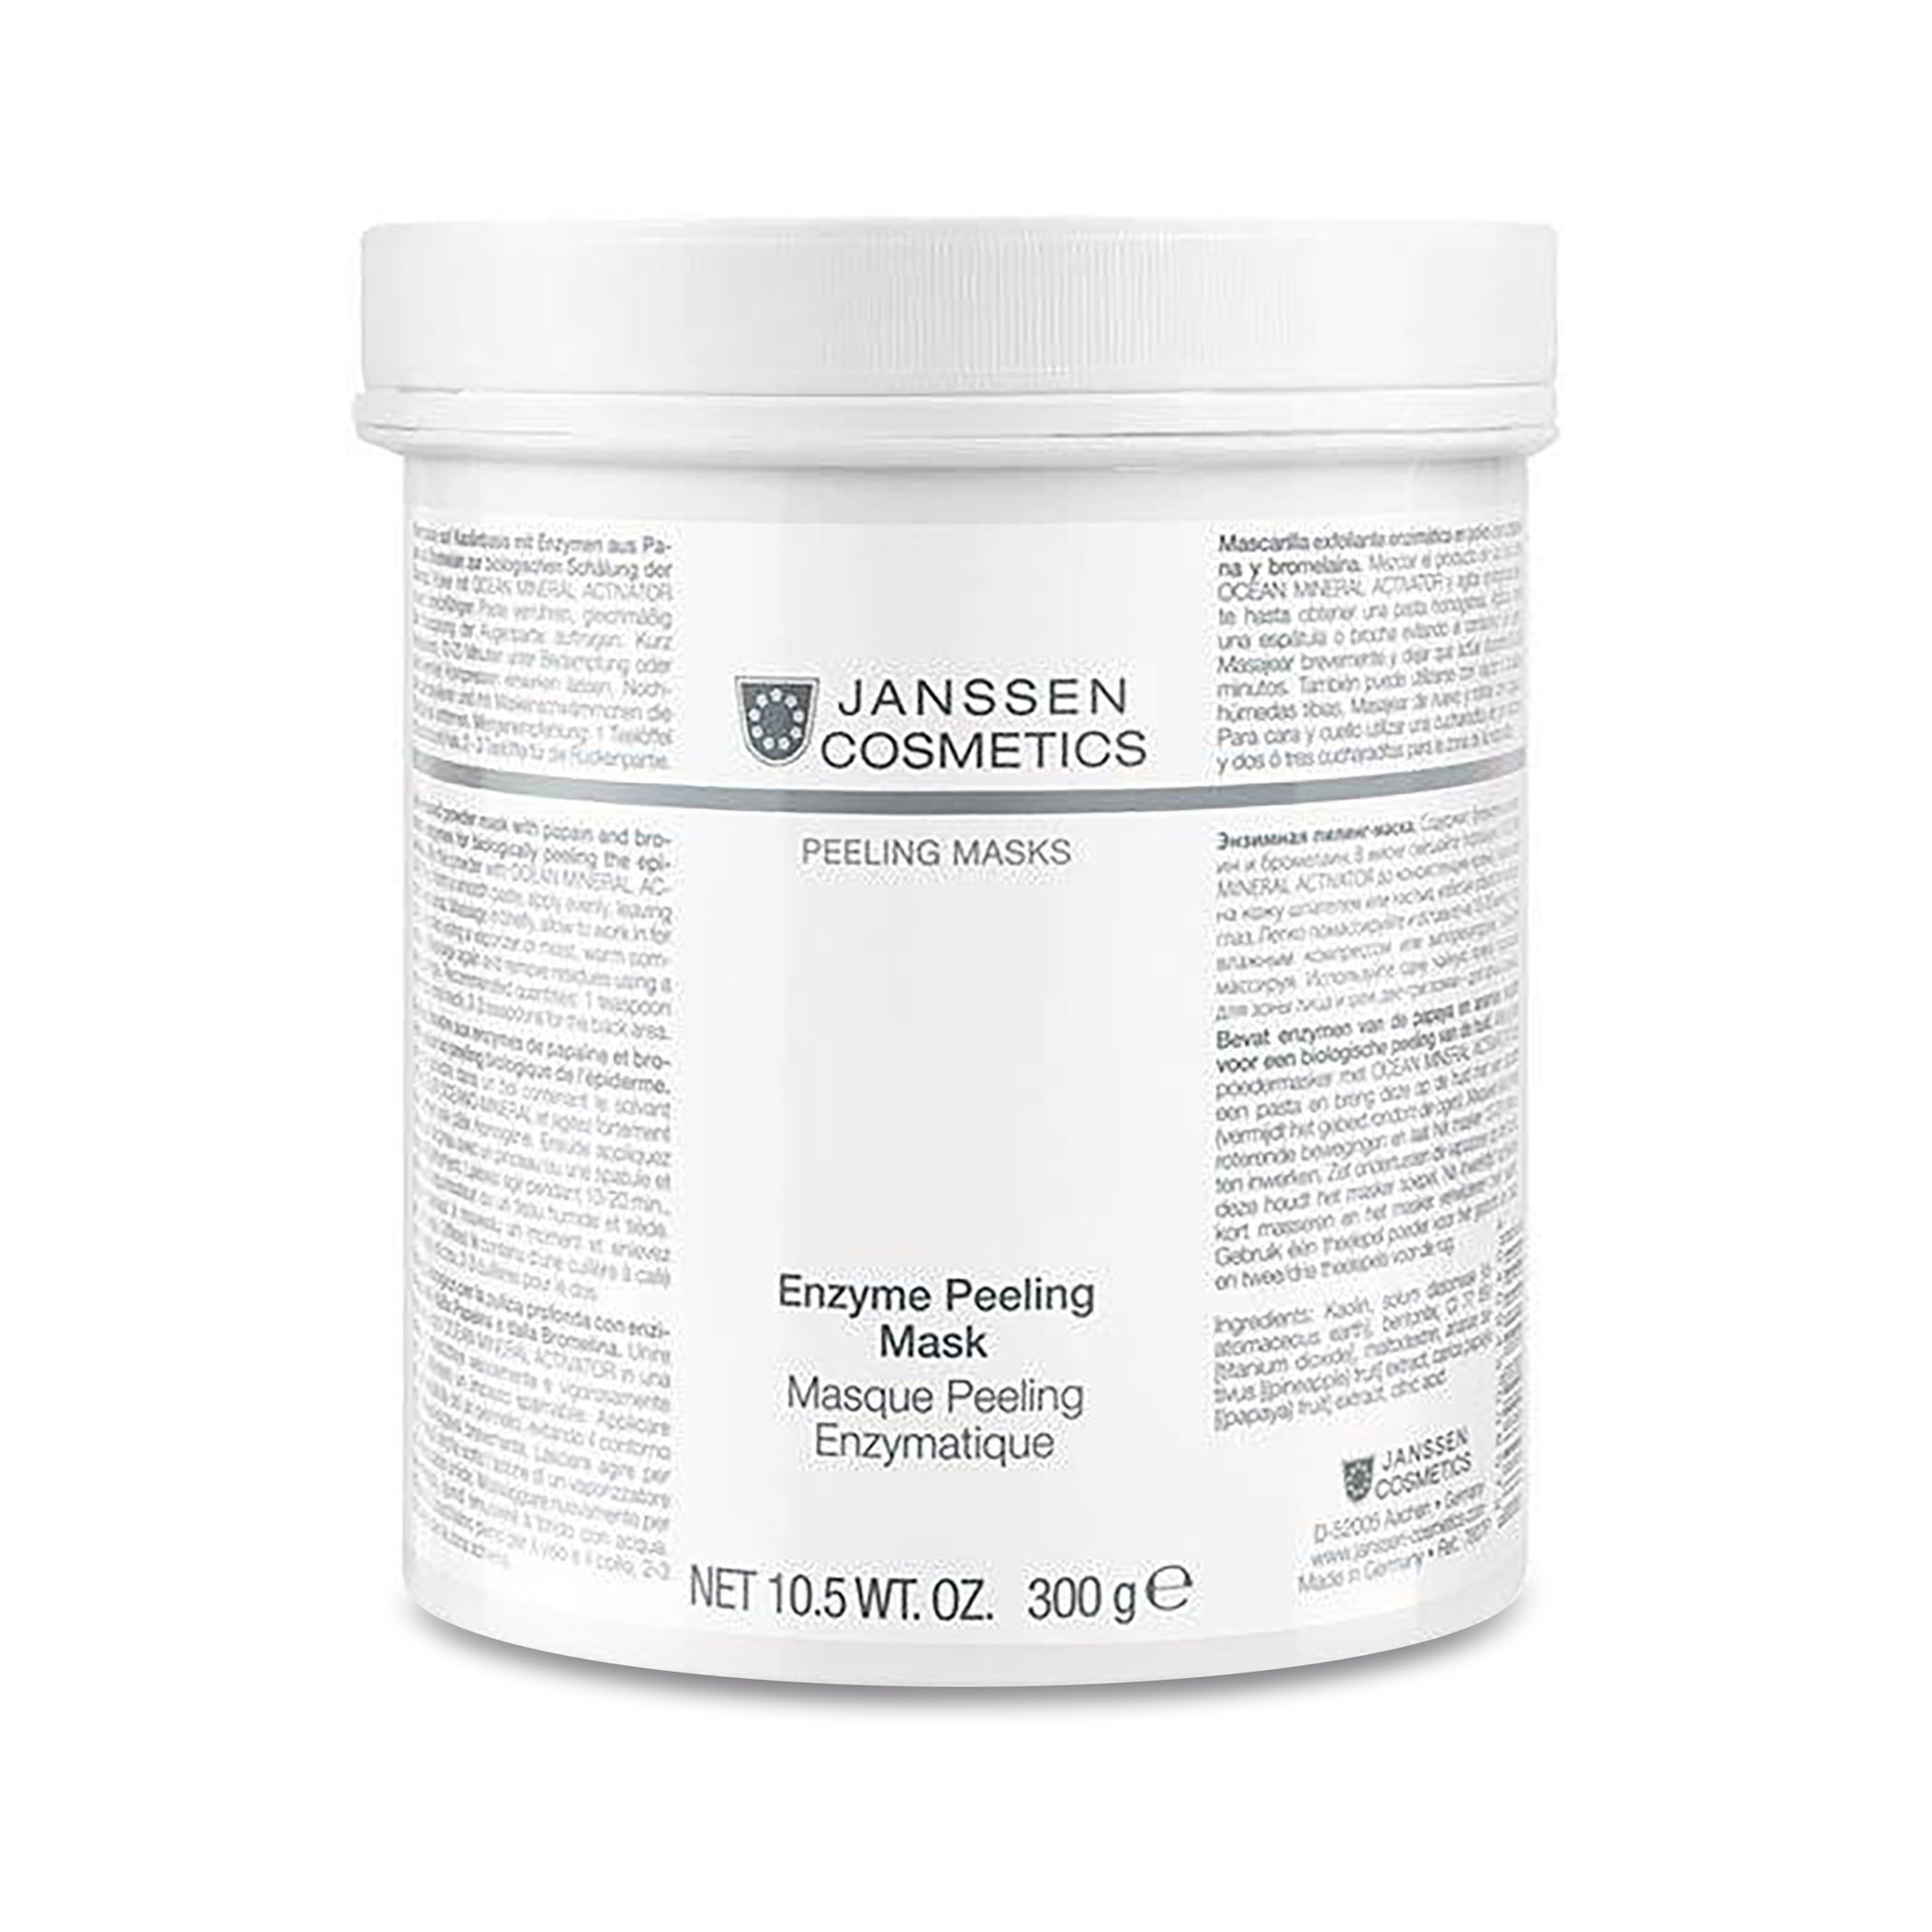 Маска энзимный пилинг. Пилинг для лица Janssen Cosmetics. Janssen Cosmetics альгинатная маска. Янсен энзимный пилинг порошок. Энзимная пилинг-маска Enzyme peeling Mask.